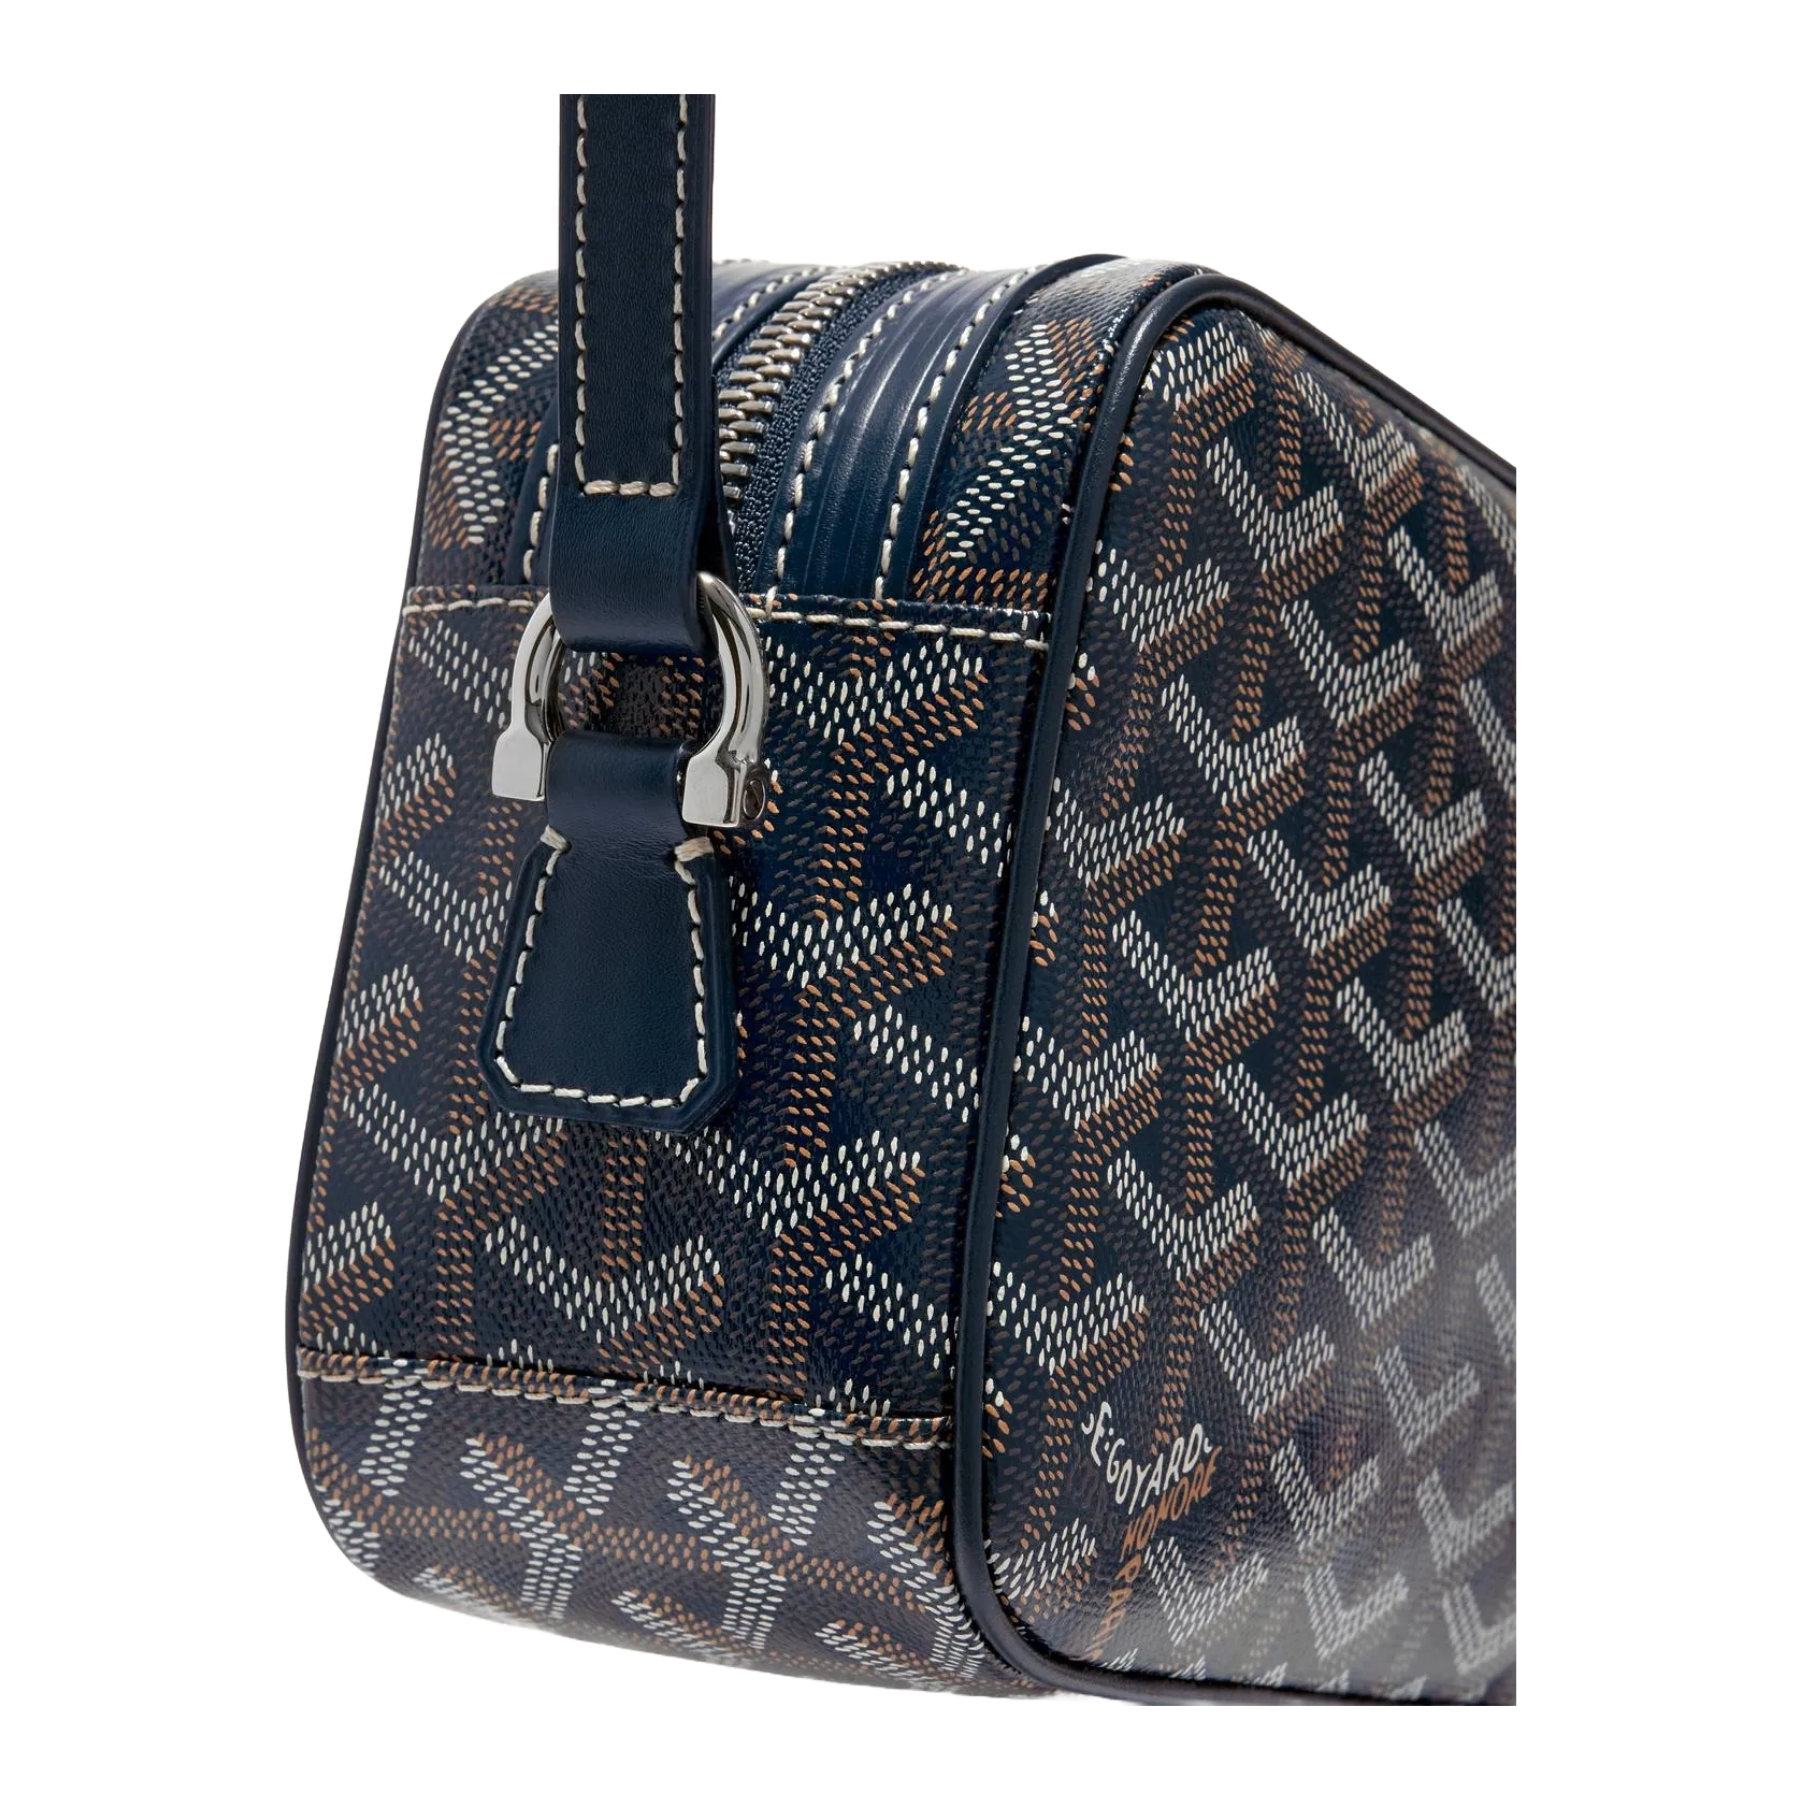 Goyard Cap vert cloth handbag - ShopStyle Shoulder Bags